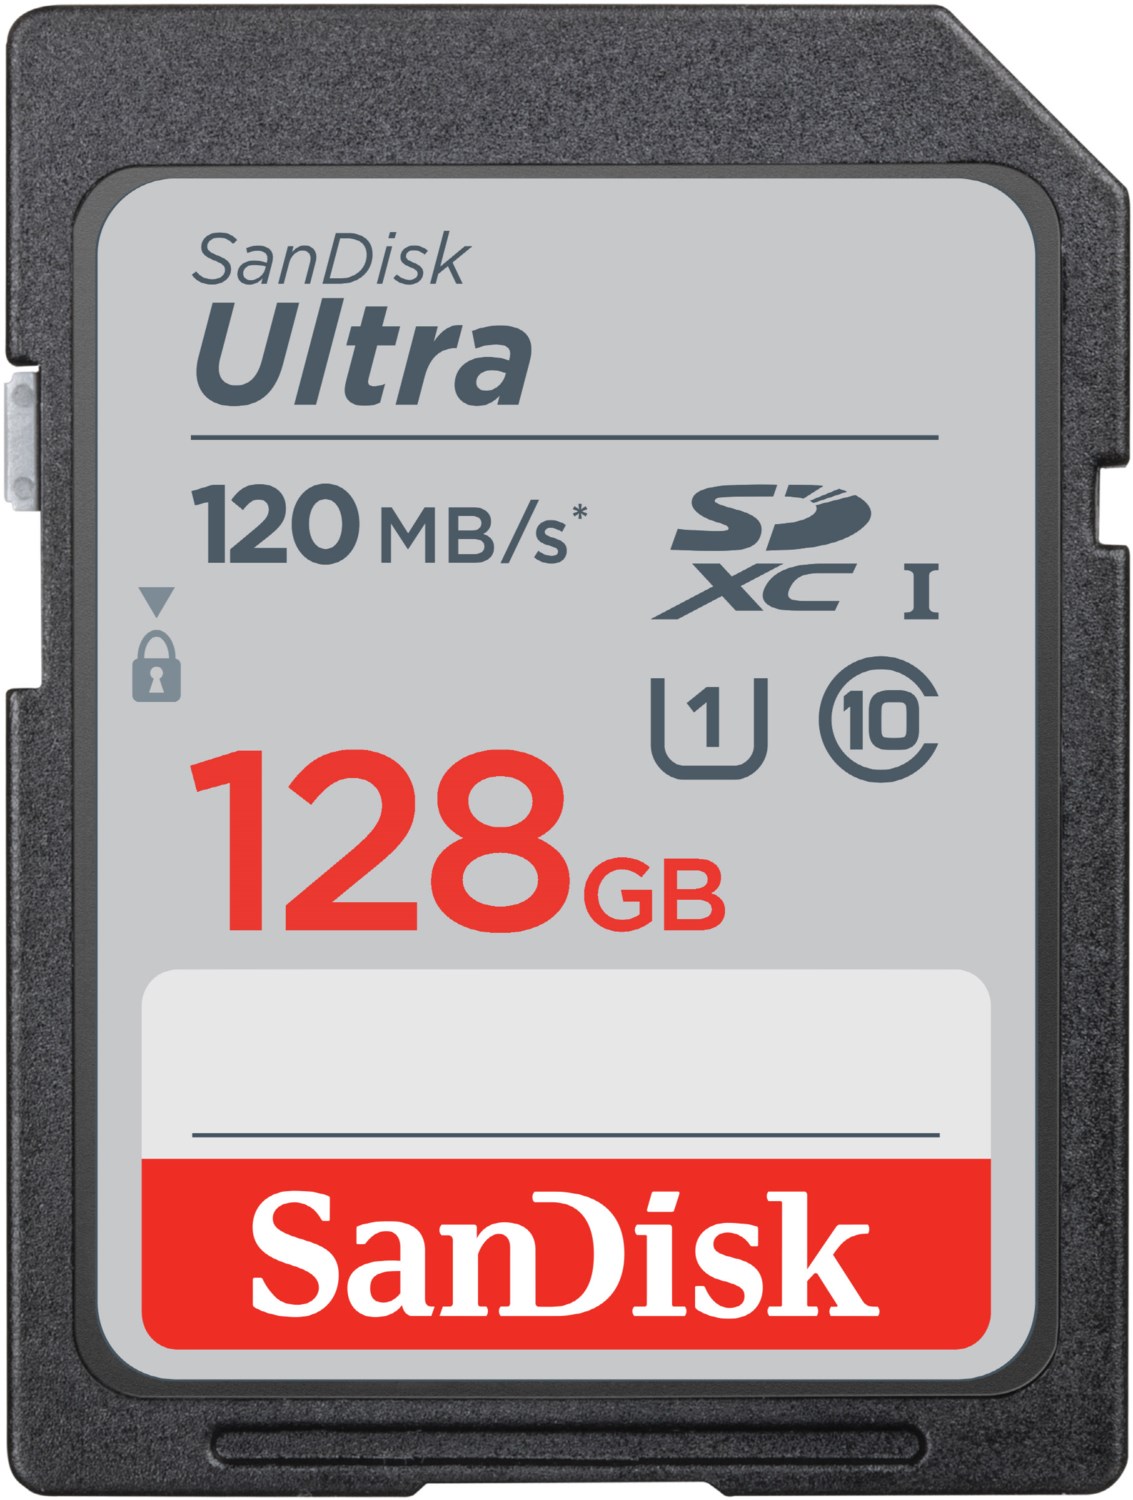 SDXC Ultra Class 10 (128GB) Speicherkarte von Sandisk